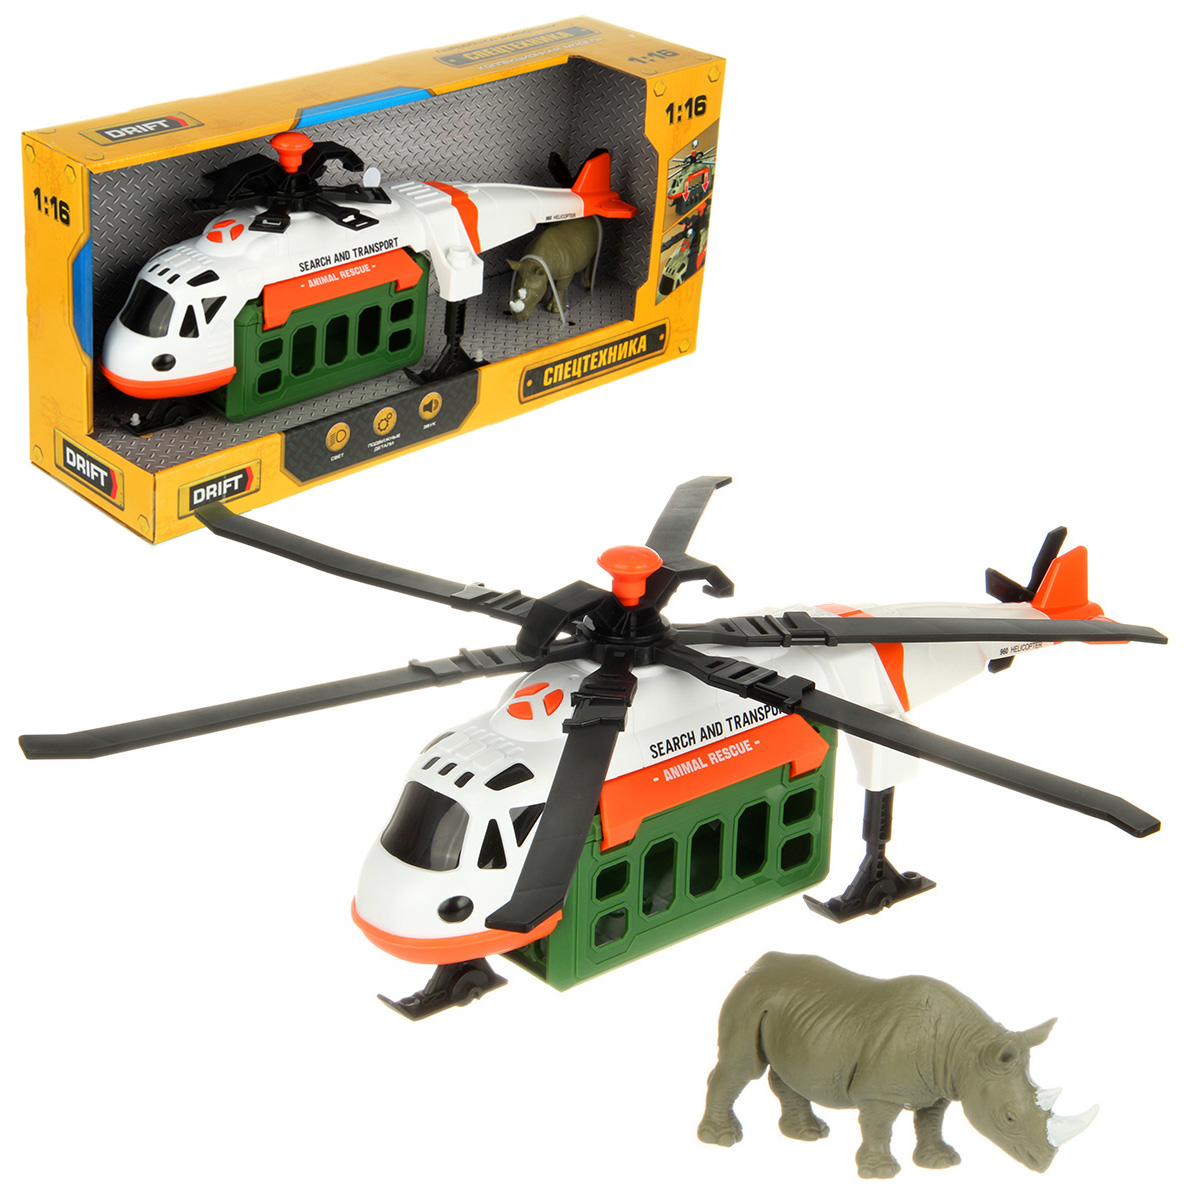 Вертолет игрушечный Drift Перевозка животных 1:16 белый 130979 drift вертолет fire and rescque helicopter 1 16